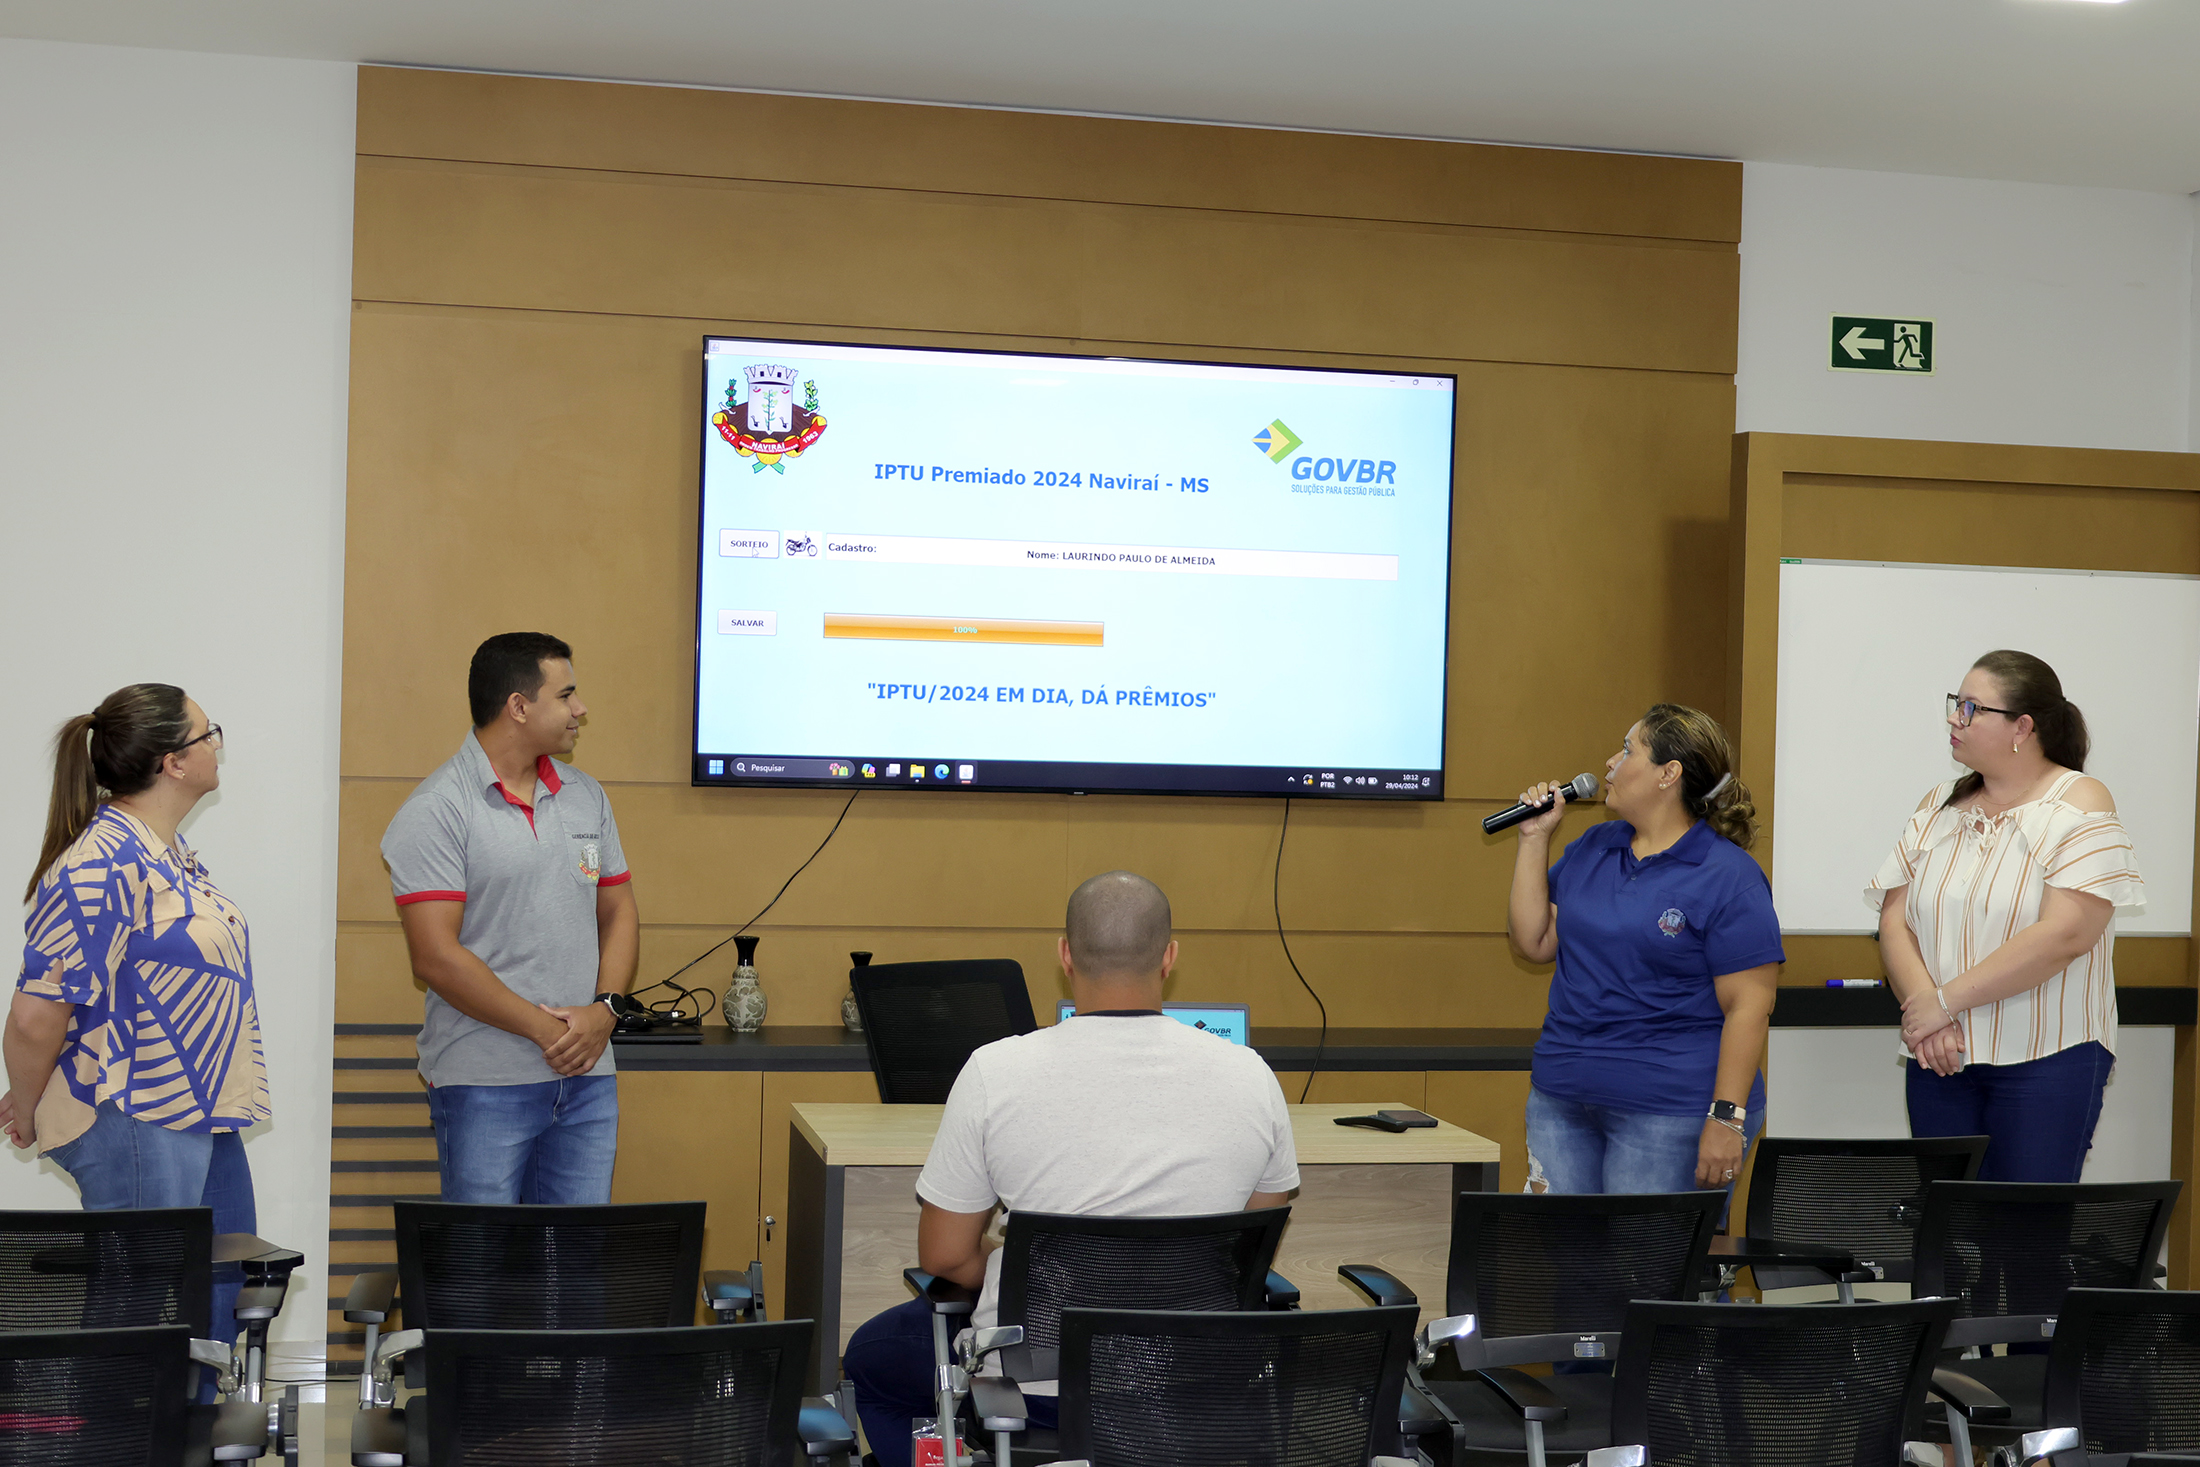 Prefeitura de Naviraí sorteou mais uma moto na campanha IPTU 2024 em Dia dá Prêmios